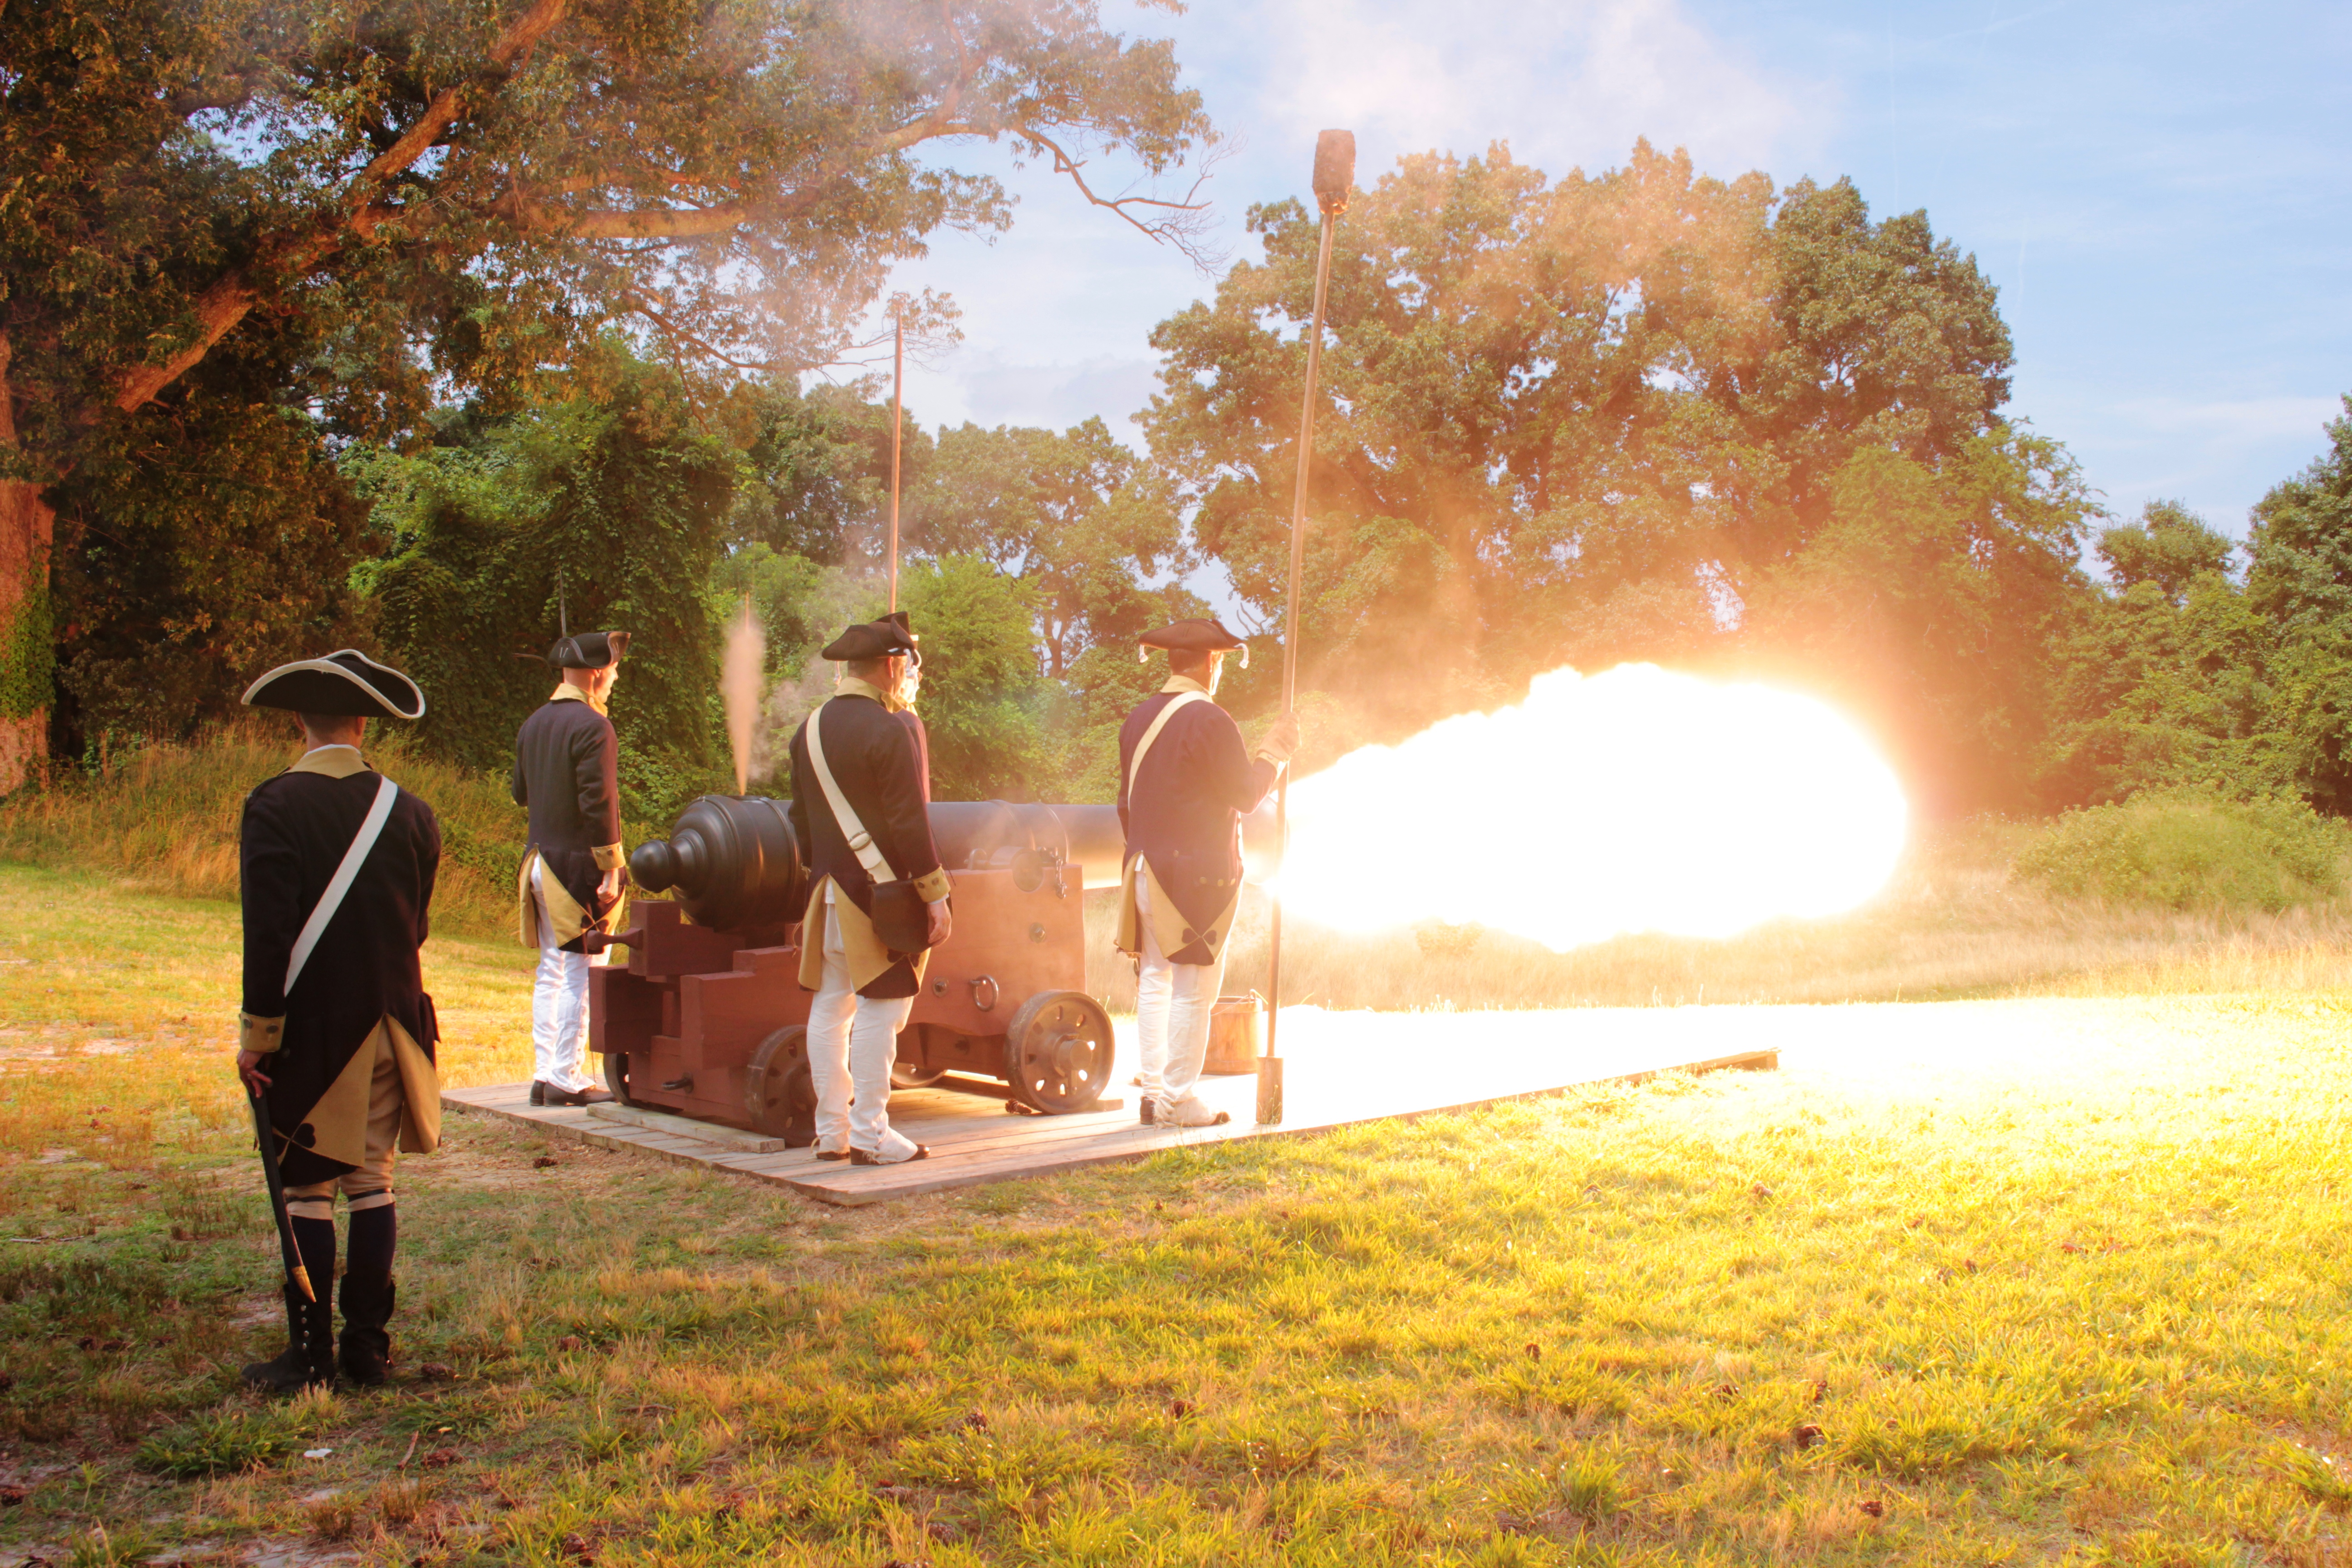 Lamb's Artillery Fire 18 pounder Cannon Yorktown Battlefield